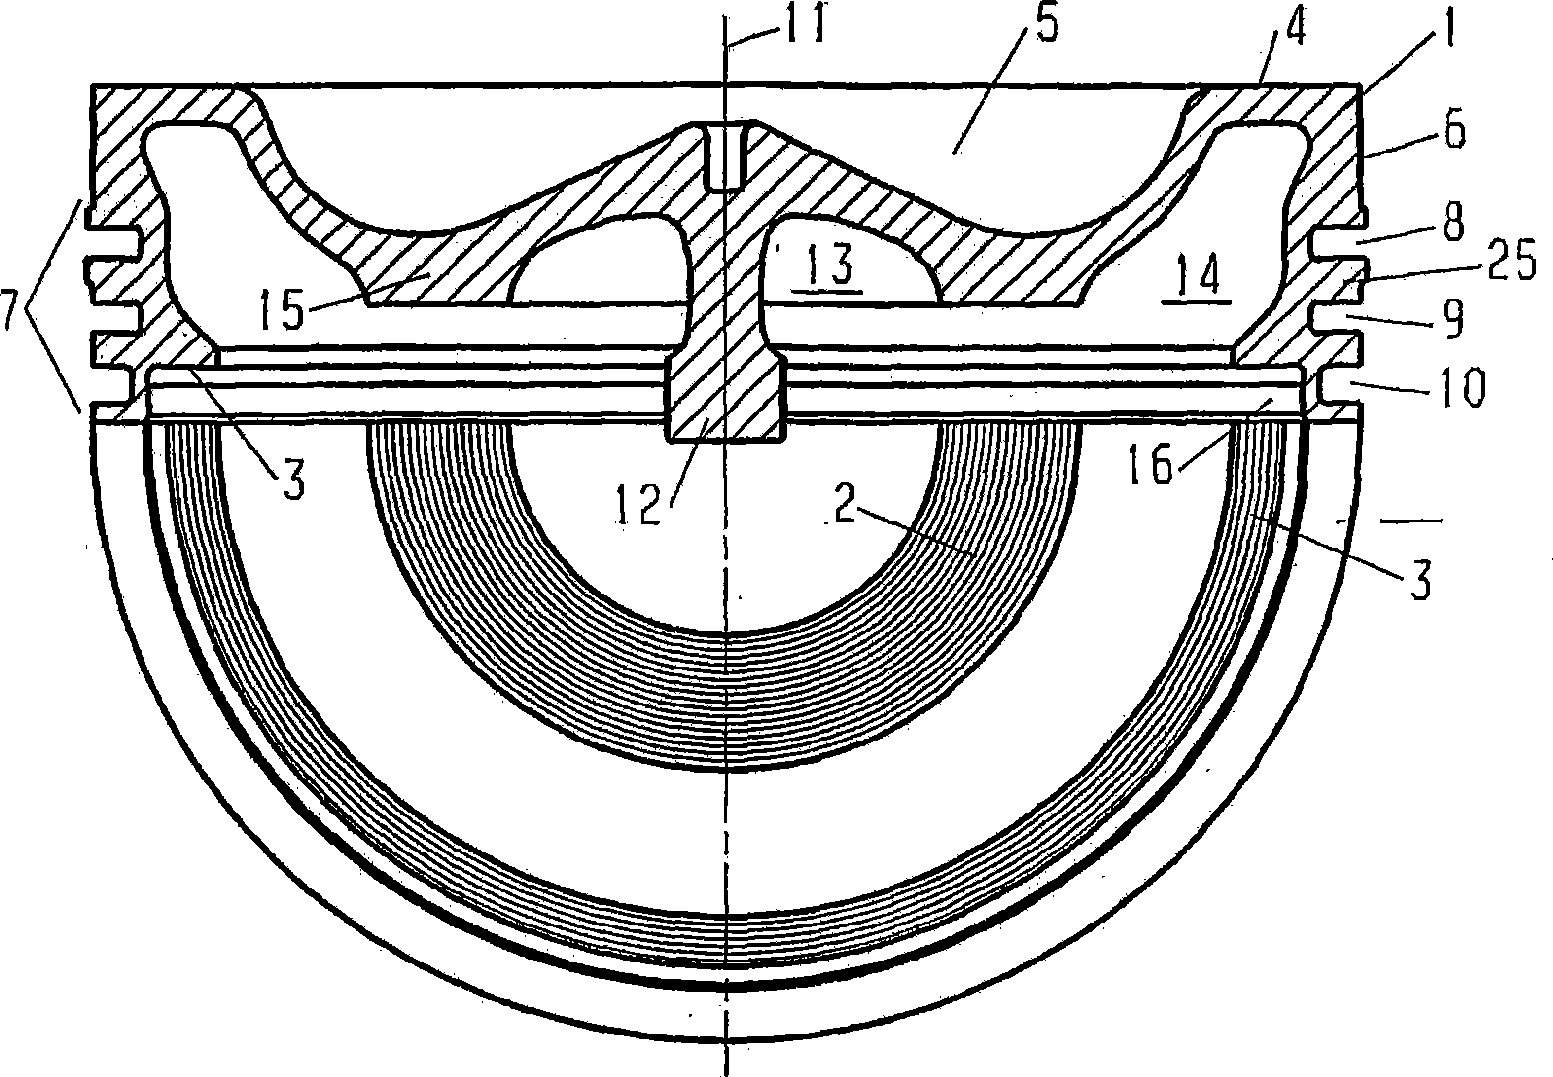 Upper part of an assembled piston